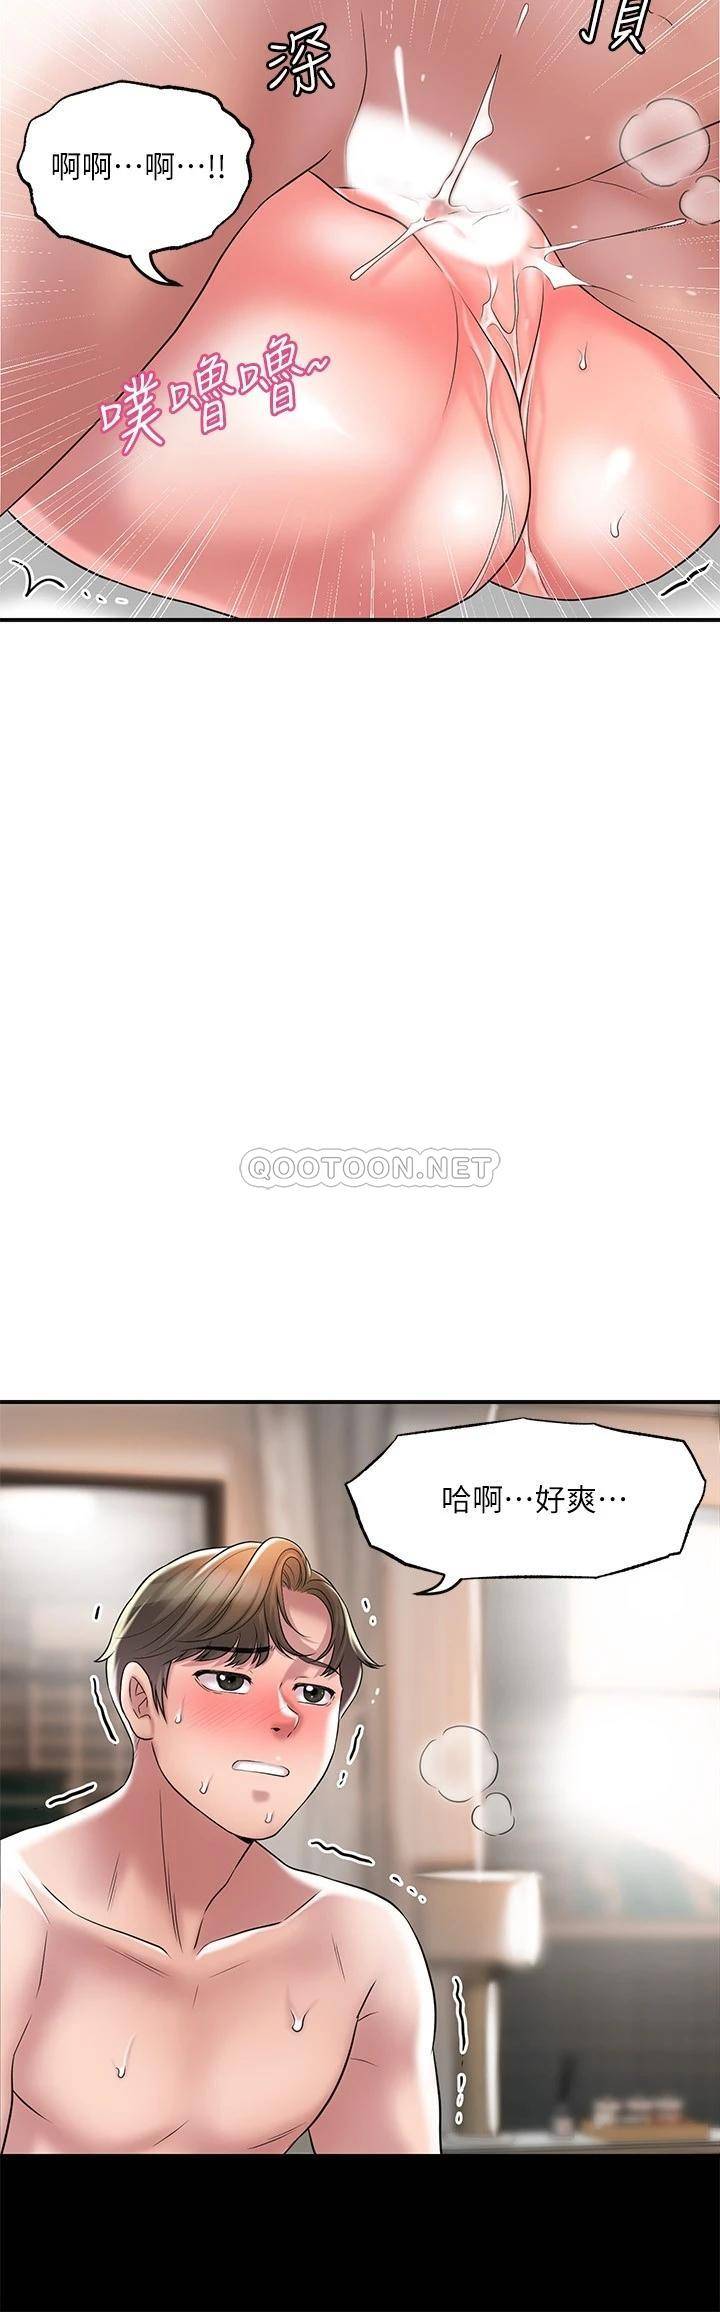 韩国污漫画 幸福督市 第23话 让美珠堕落的特殊体位 19